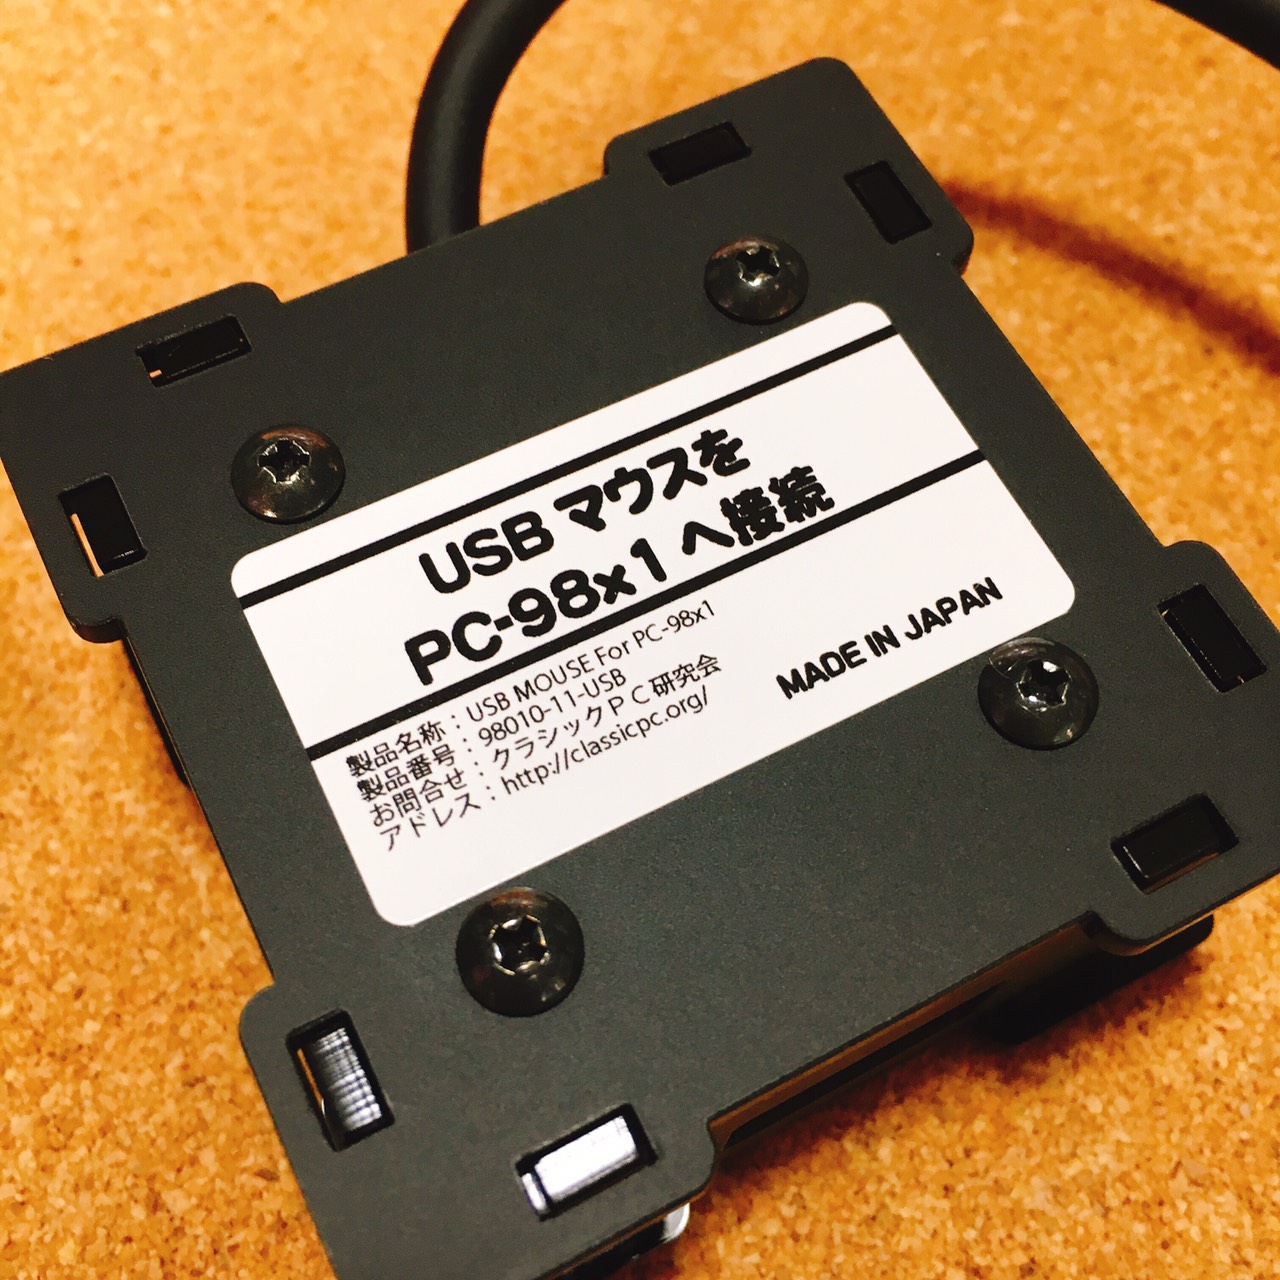 PC-9801(9821)へUSBマウスを接続する変換機 | クラシックPC研究会